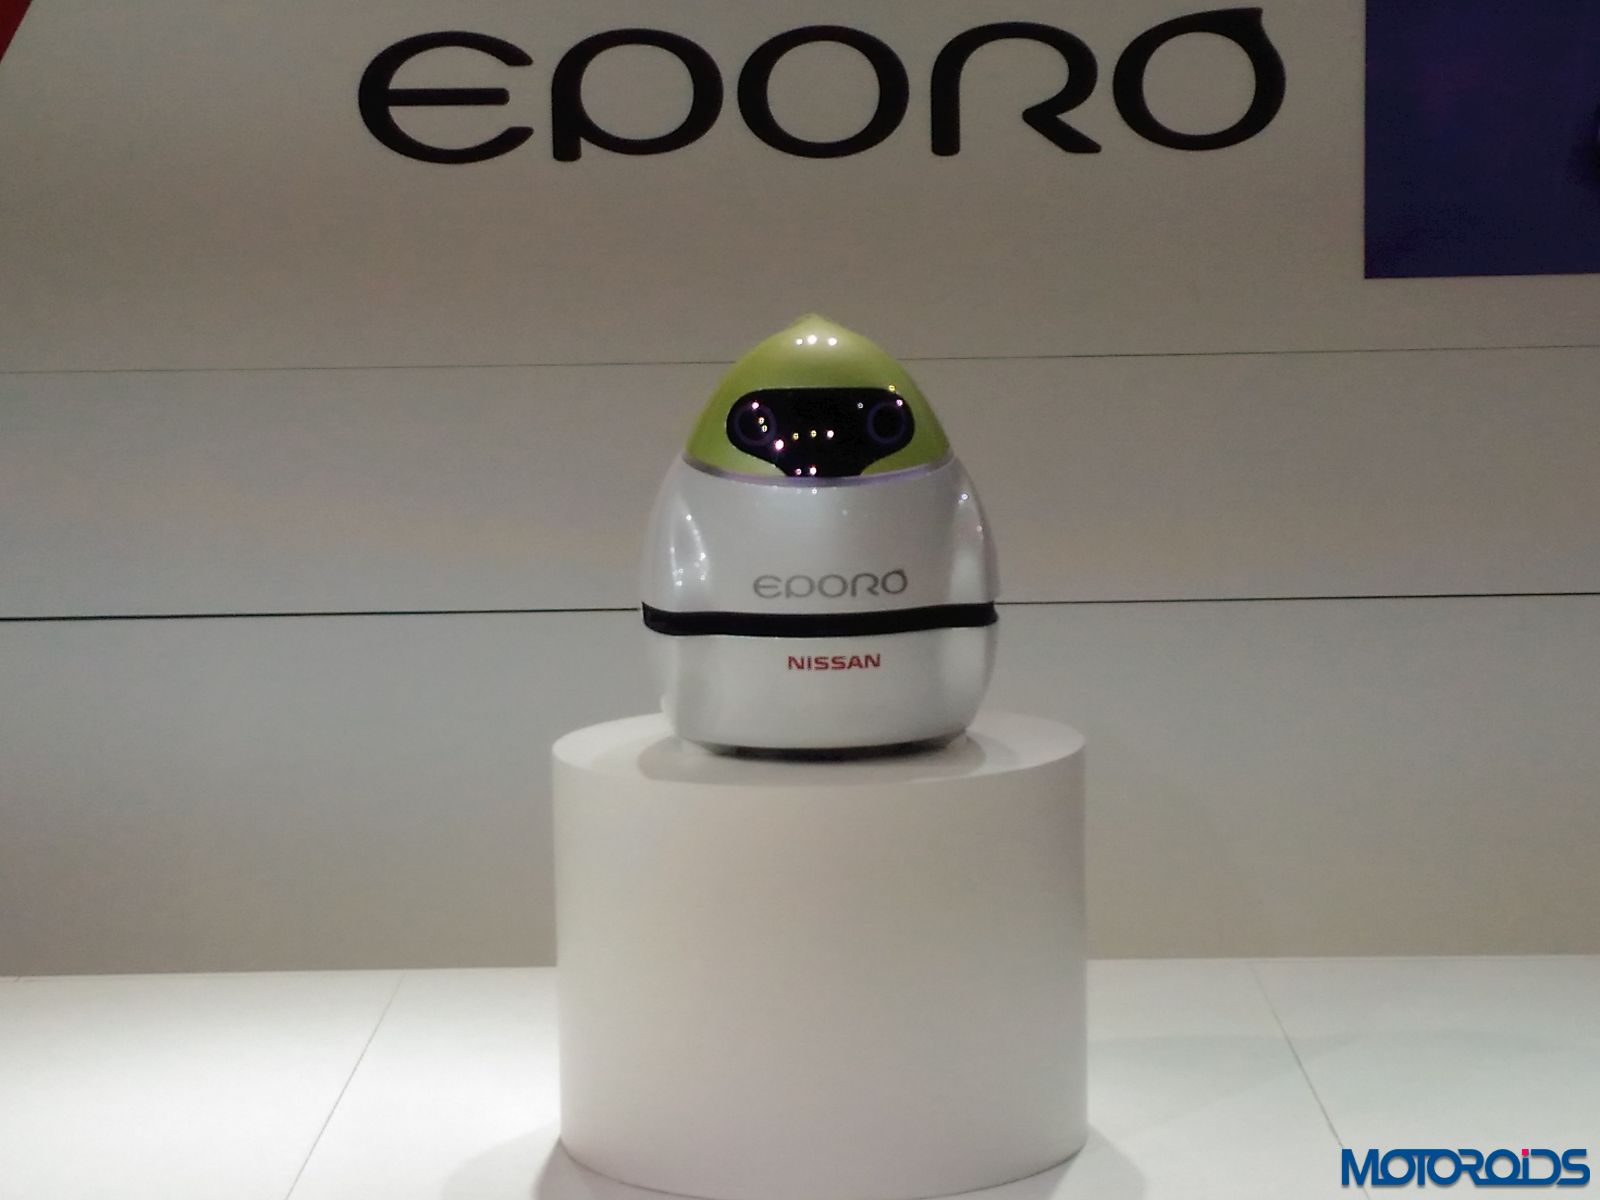 NIssan EPORO robots (2)